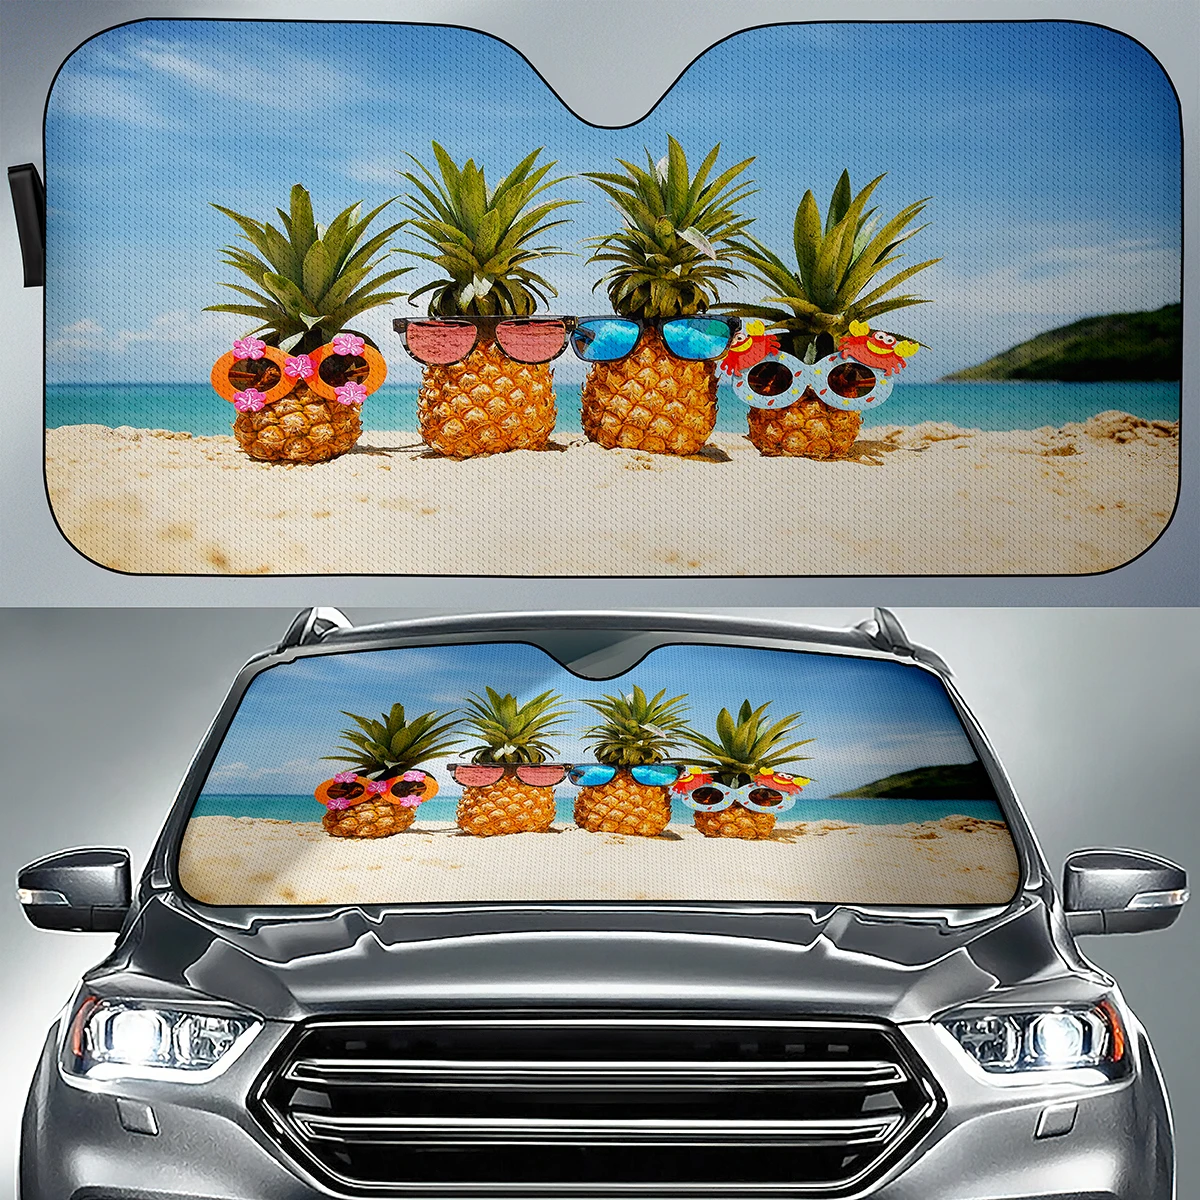 

Солнцезащитный козырек для автомобиля, креативный складной козырек с изображением ананаса и фруктов, с защитой от ультрафиолетовых лучей, для внедорожников и грузовиков